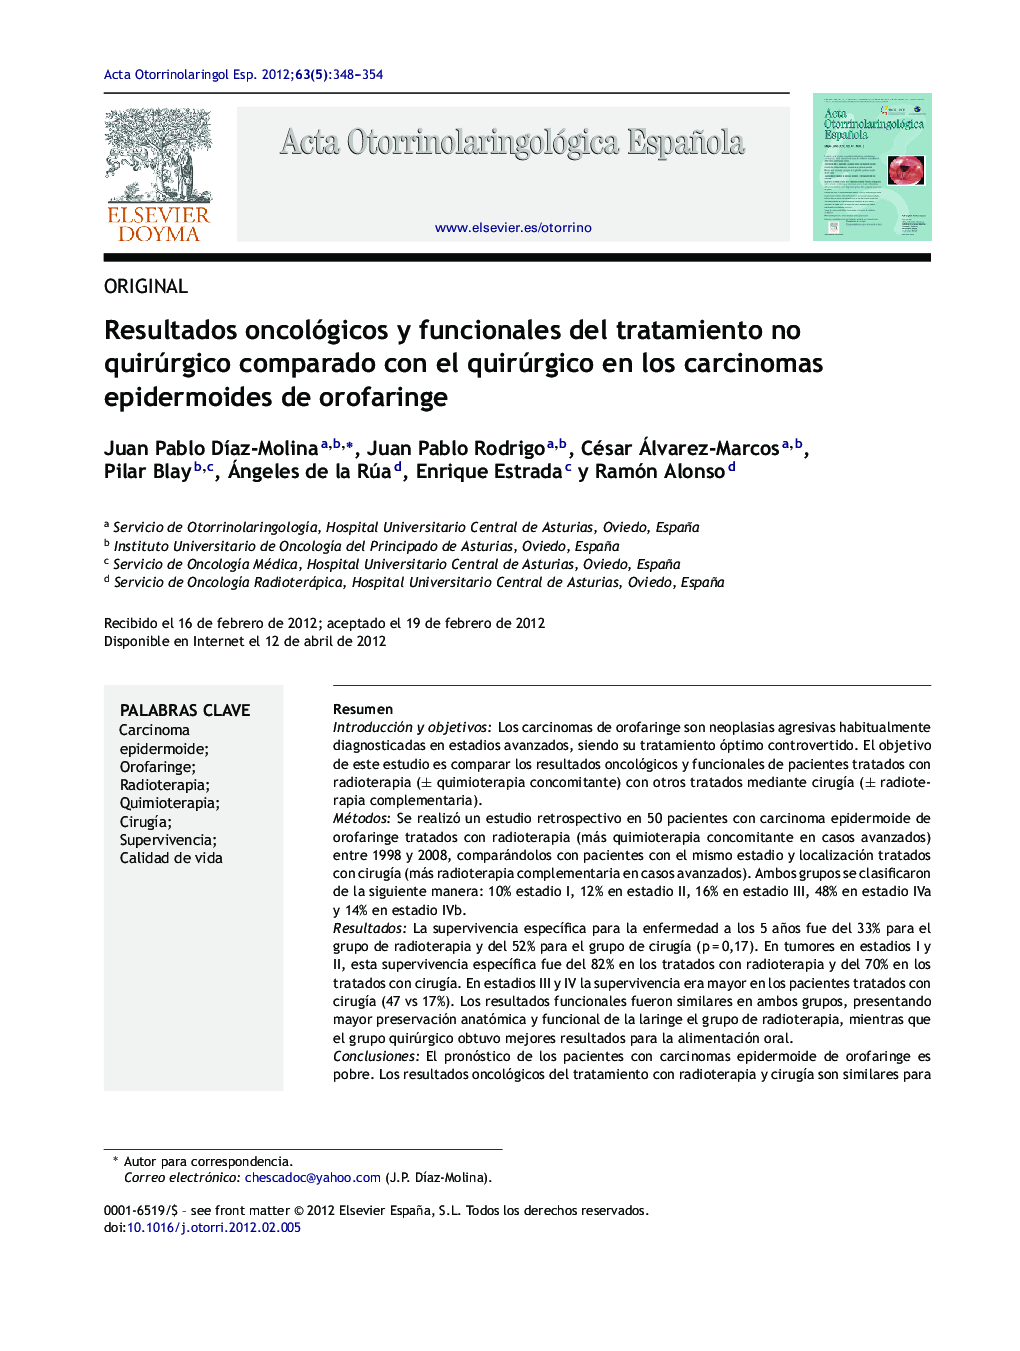 Resultados oncológicos y funcionales del tratamiento no quirúrgico comparado con el quirúrgico en los carcinomas epidermoides de orofaringe